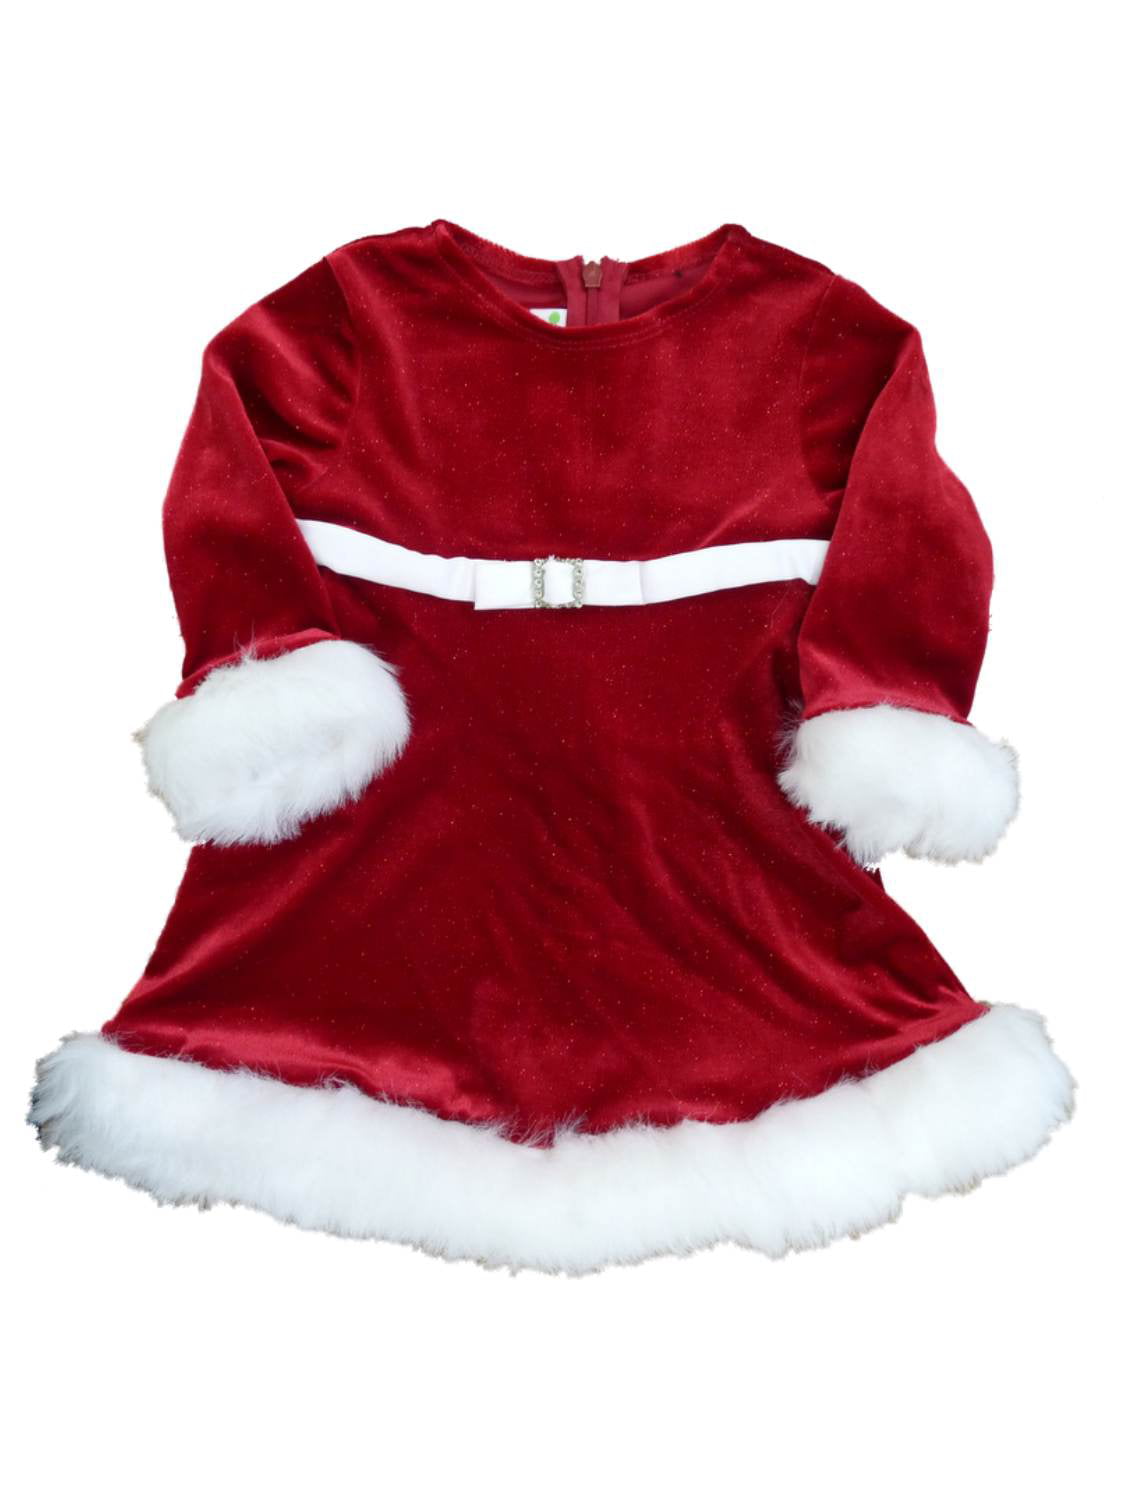 New Zenzi Girls RED Velvet Christmas HOLIDAY Santa's Dress Size 4 